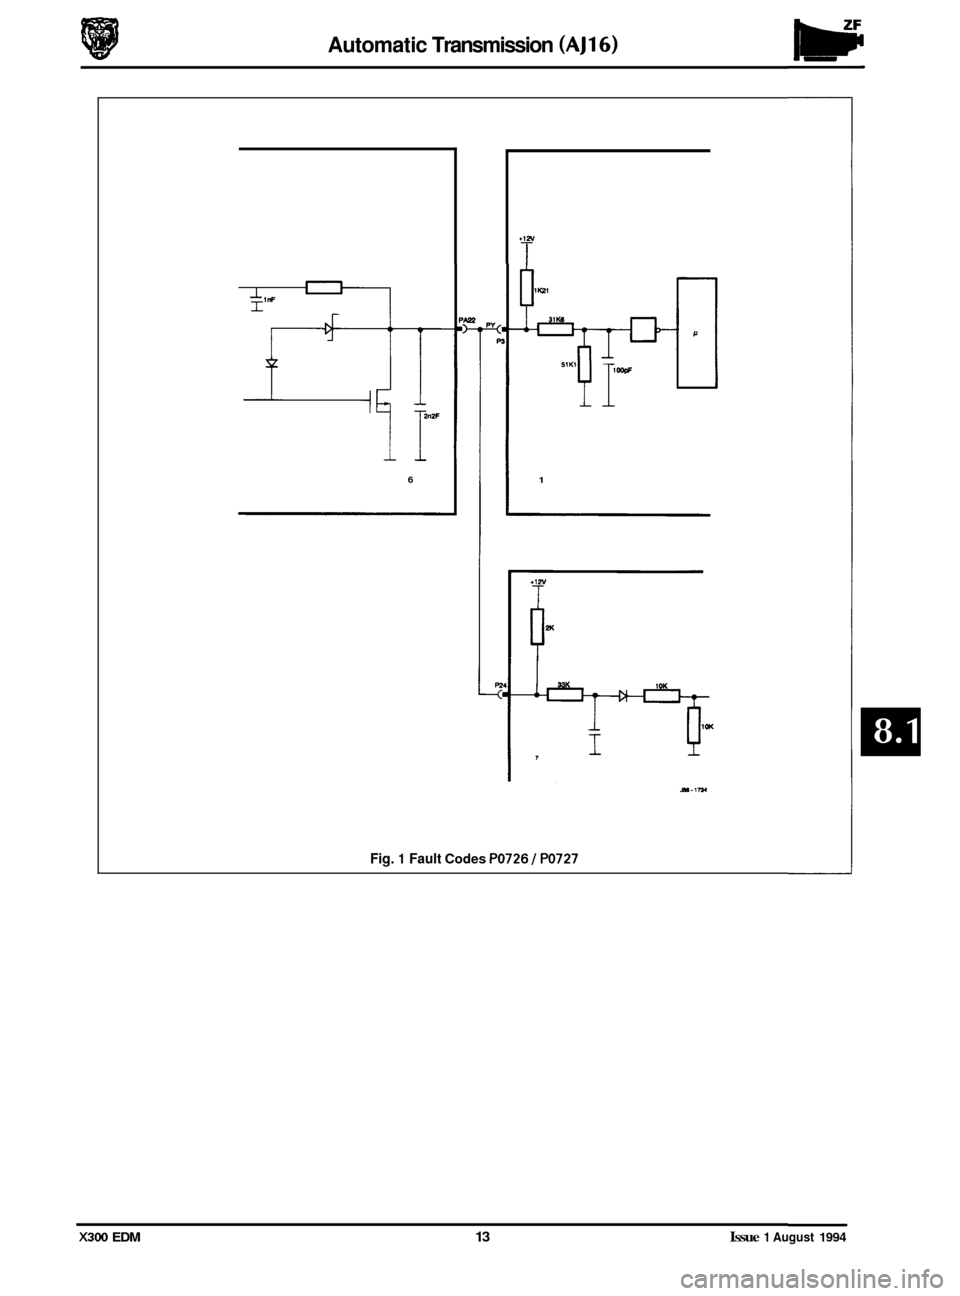 JAGUAR XJ6 1994 2.G Electrical Diagnostic Manual Automatic Transmission (AJ16) 
il 
6 
P 
1 
Fig. 1 Fault Codes PO726 1 PO727 
X300 EDM 13 Issue 1 August 1994  